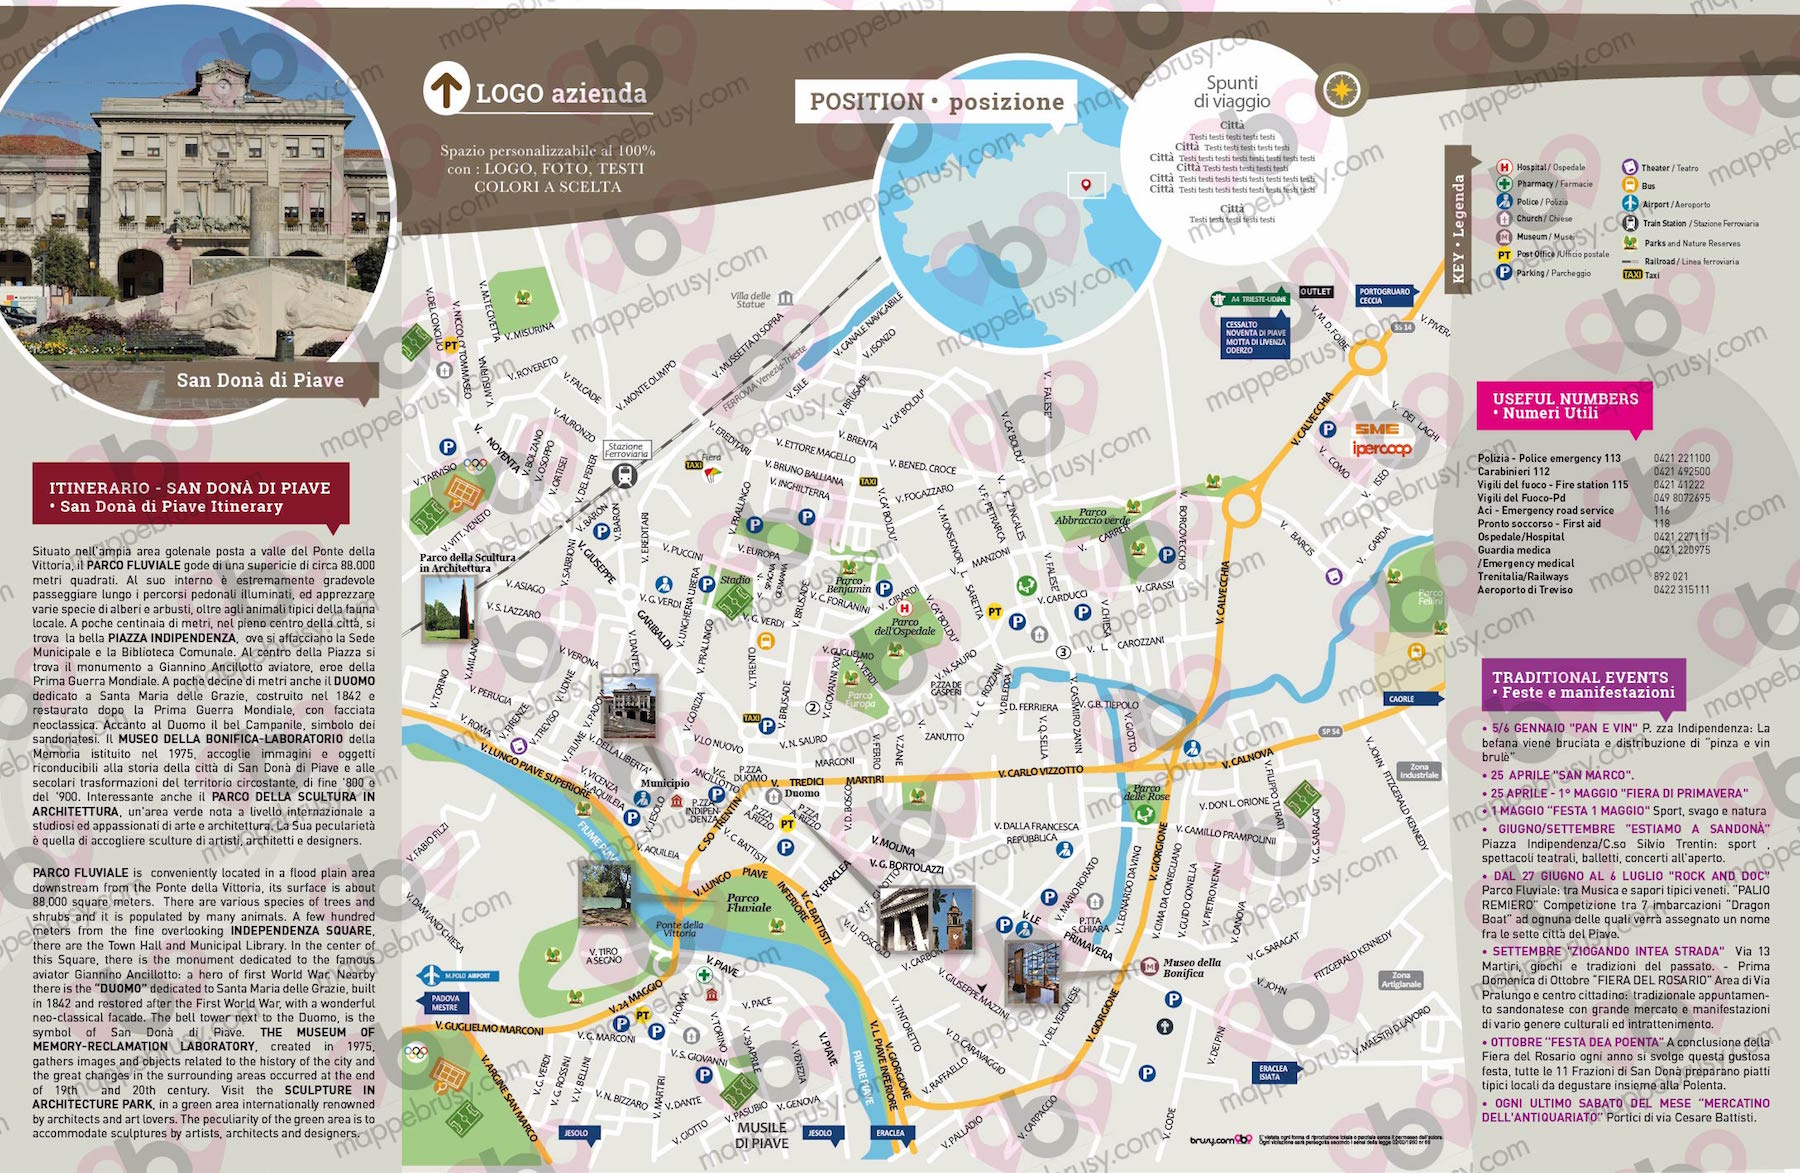 Mappa di San Dona di Piave - San Dona di Piave city map - mappa San Dona di Piave - mappa personalizzata di San Dona di Piave - mappa tursitica di San Dona di Piave